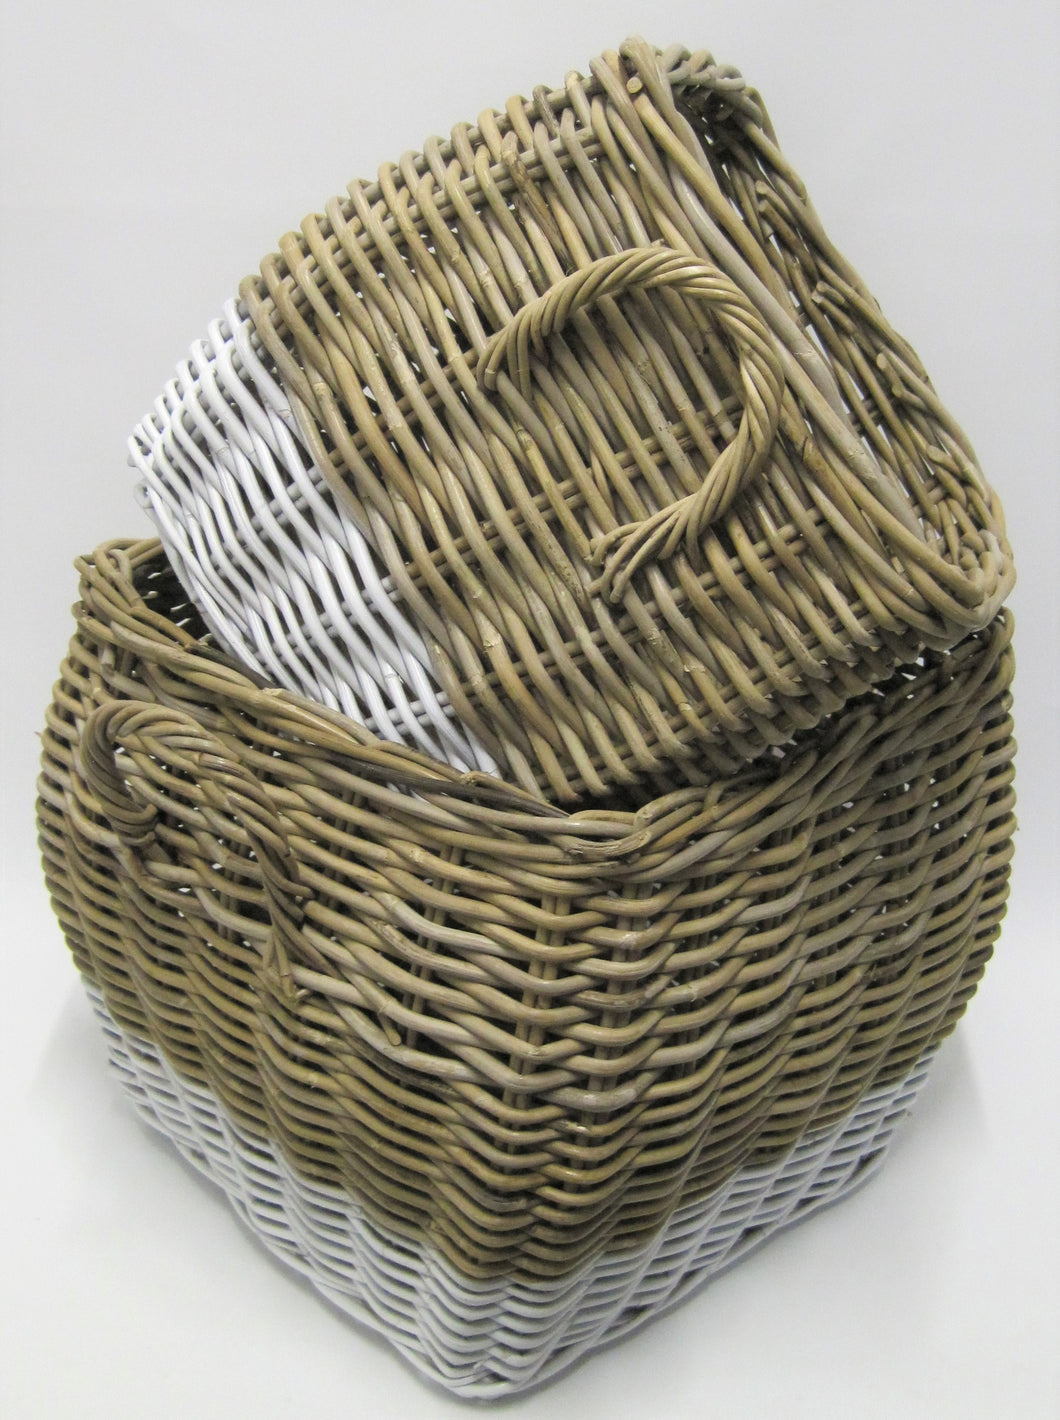 Kubu Grey Baskets with White Base